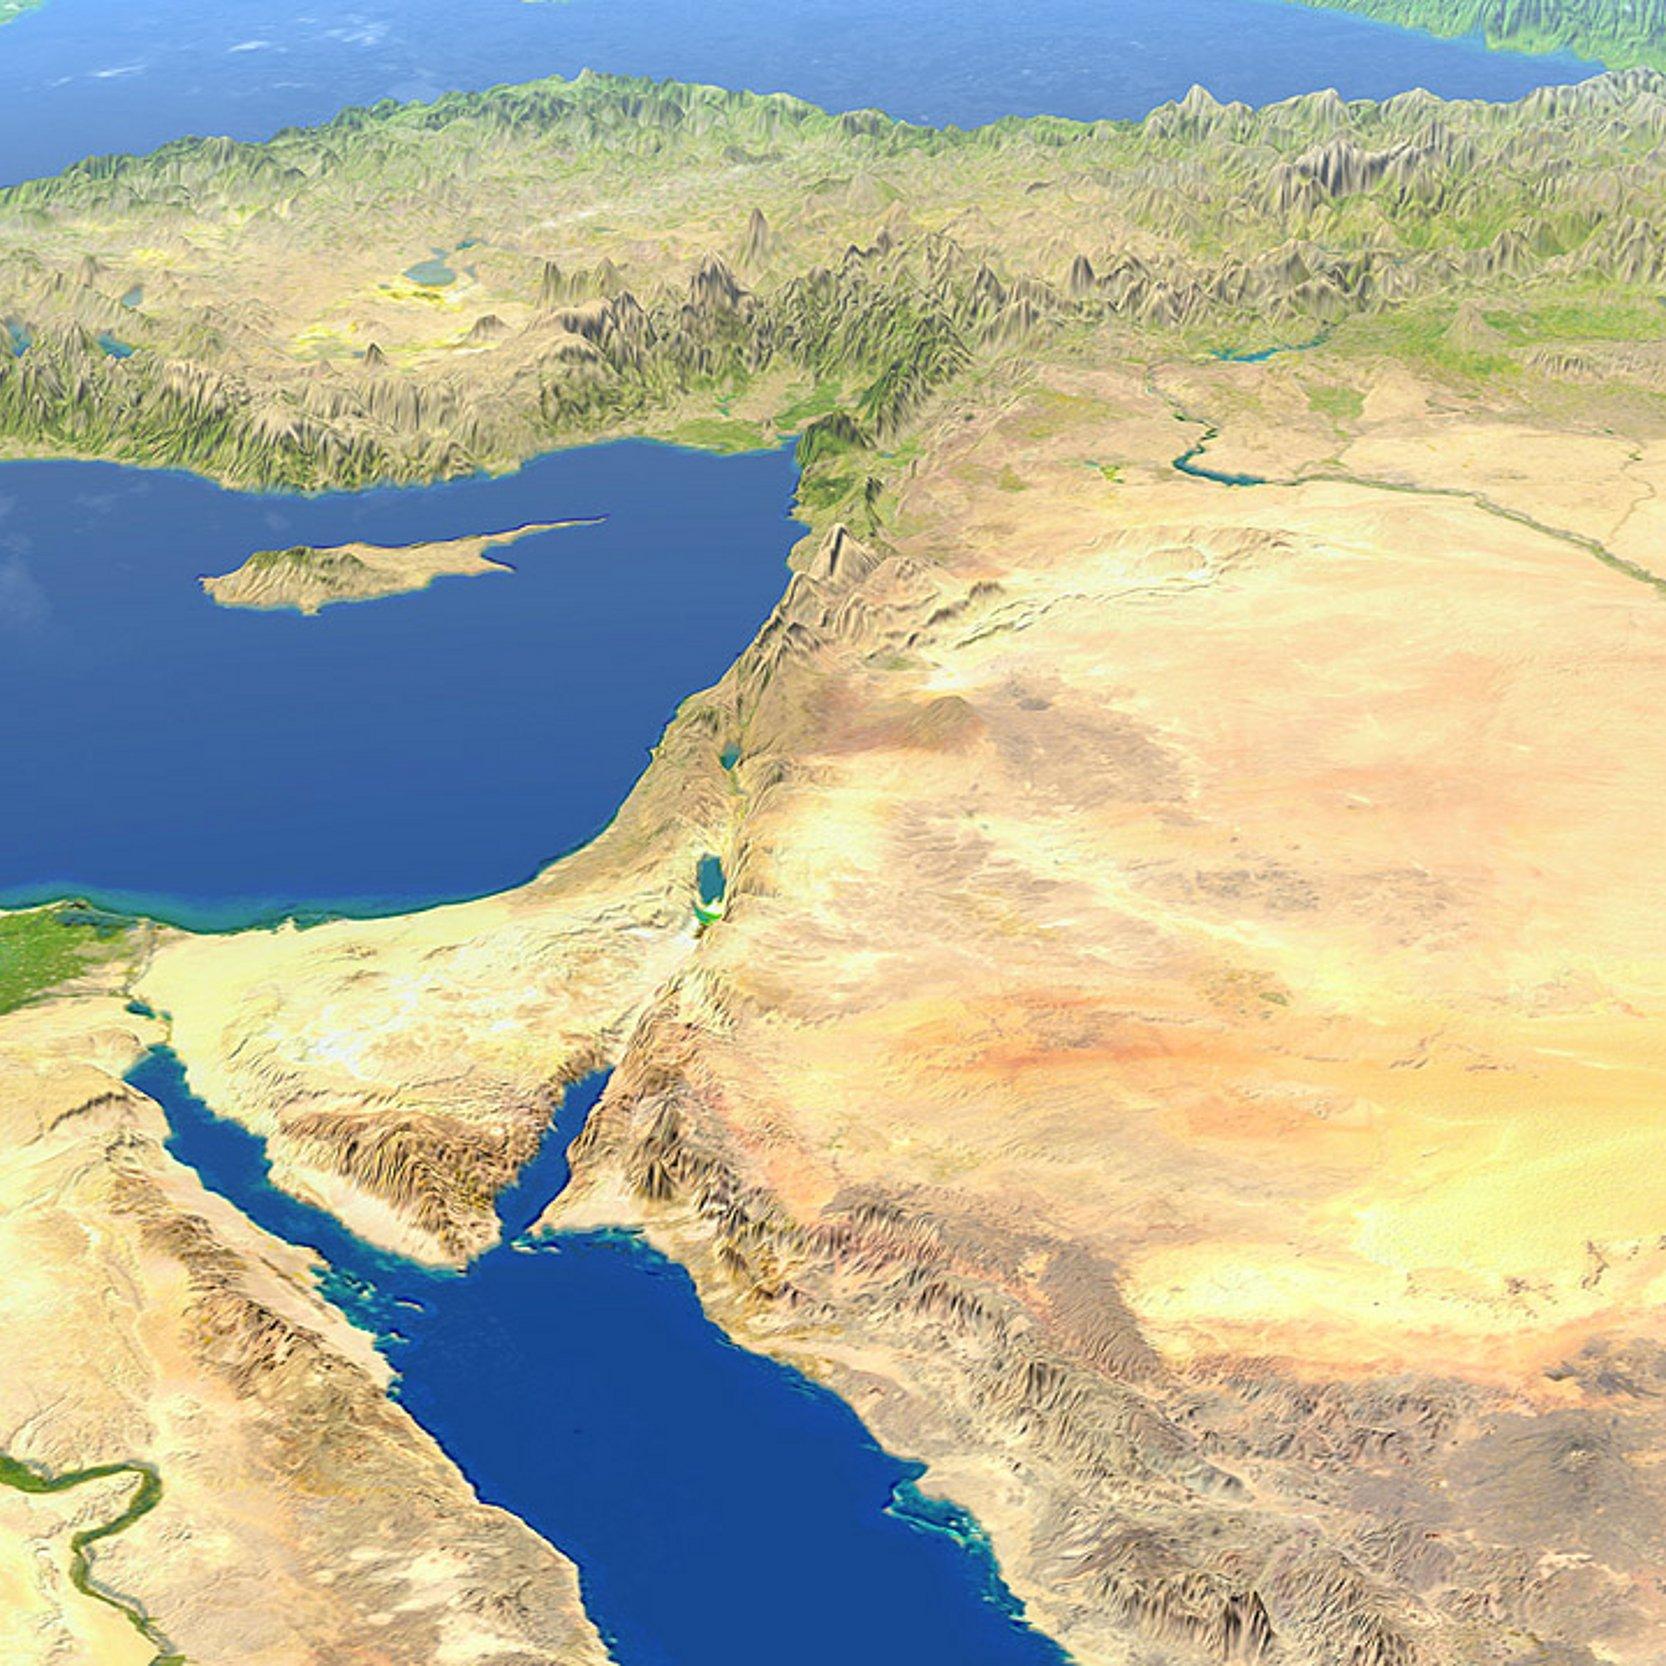 Der Nahe Osten von oben - links das Mittelmeer, rechts eine große trockene Region mit Israel, Palästina, Jordanien und anderen Ländern, oben die gebirgige Türkei und unten das rote Meer und die arabische Halbinsel